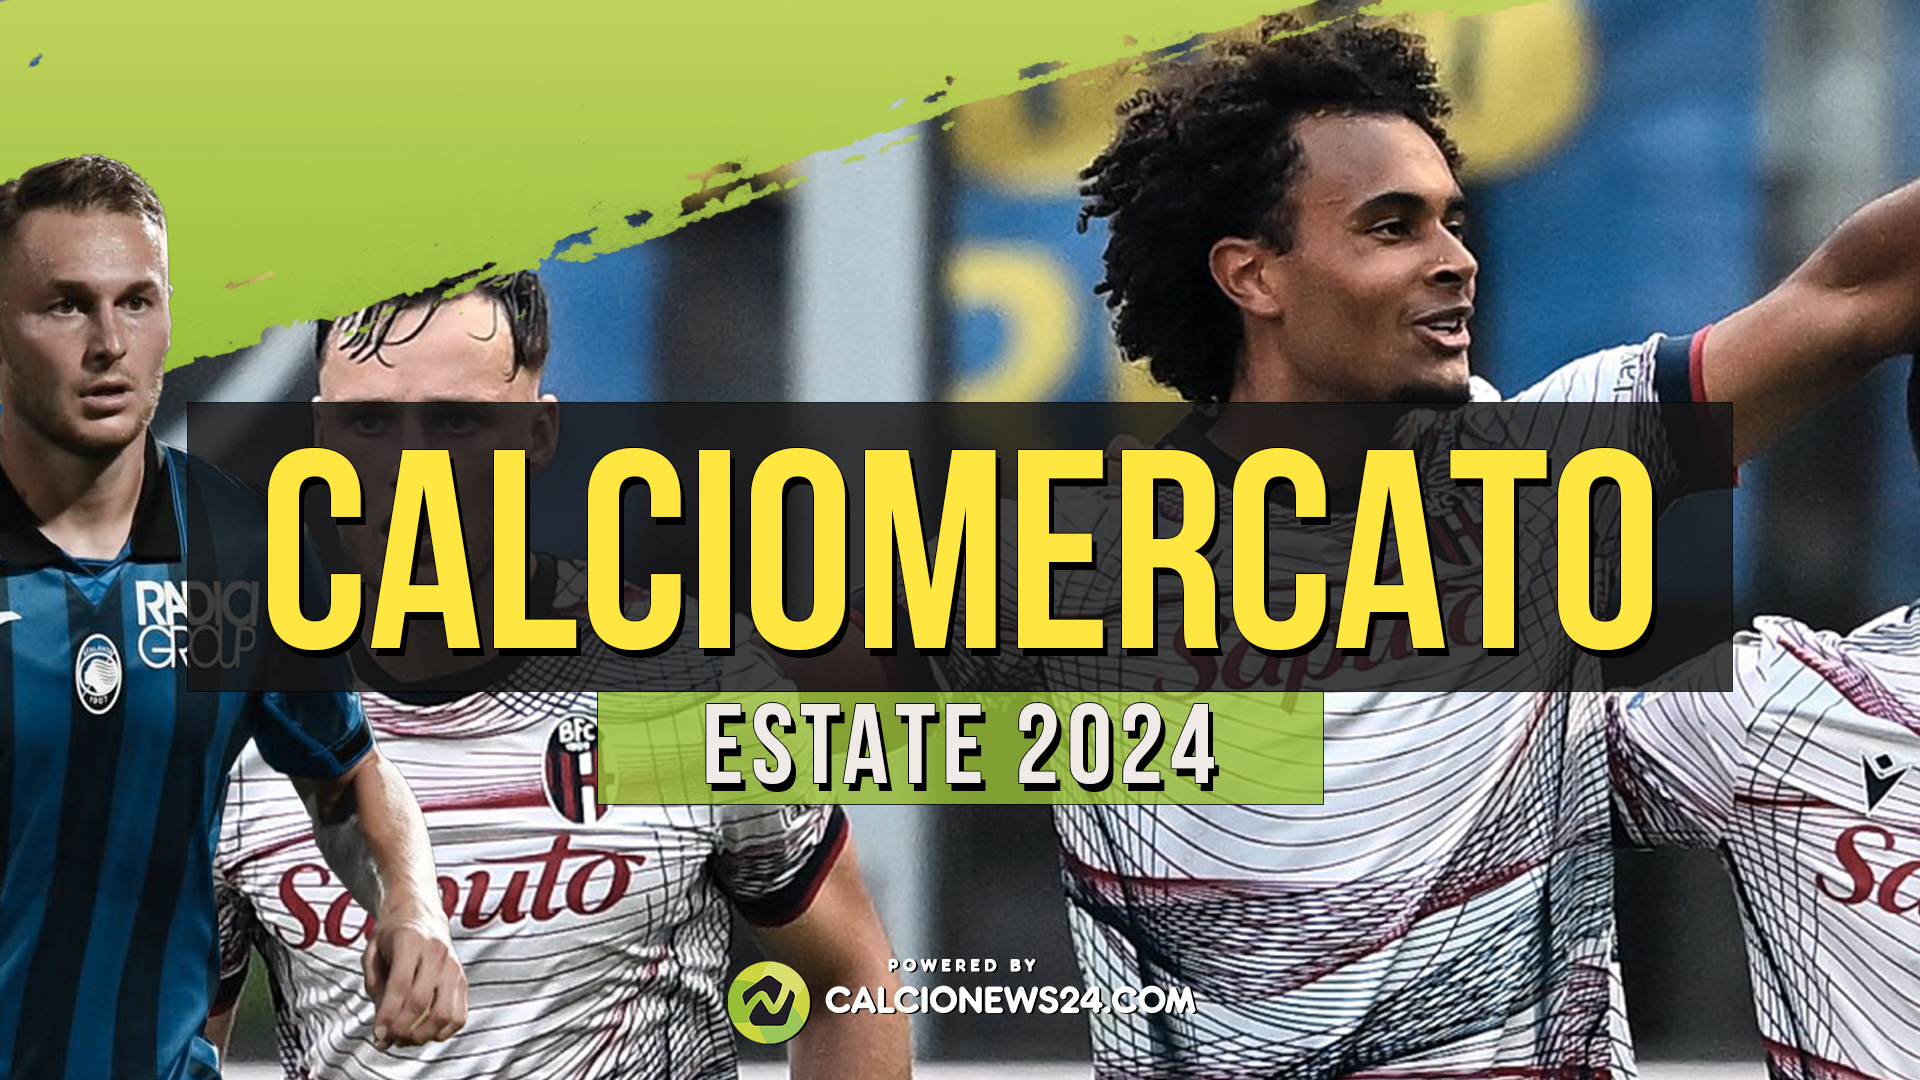 Tabellone calciomercato estivo 2024: i trasferimenti in entrata e in uscita in Serie A